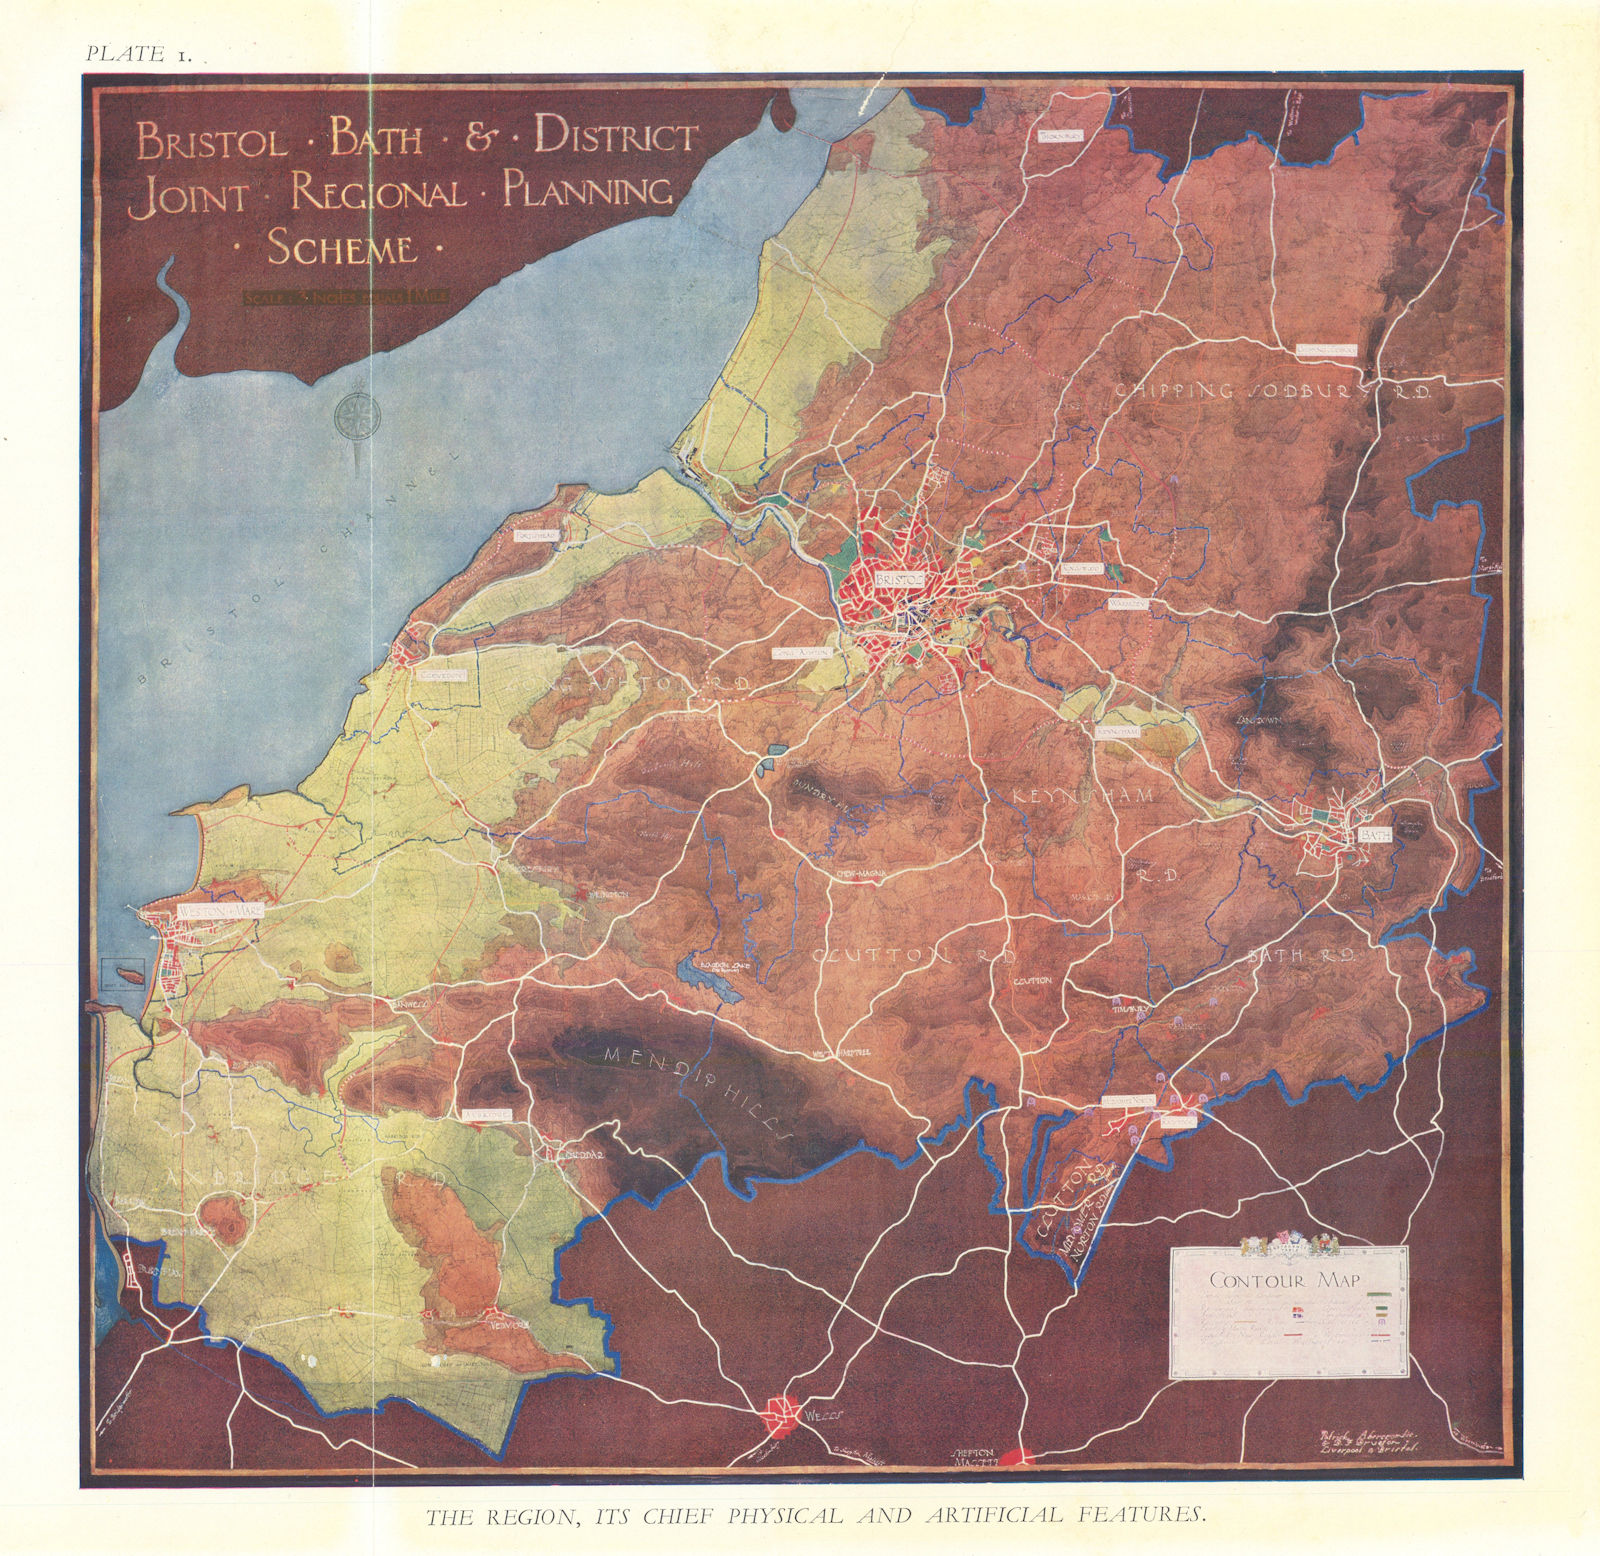 Associate Product Bristol & Bath Regional Planning Scheme. Contour map. ABERCROMBIE 1930 old